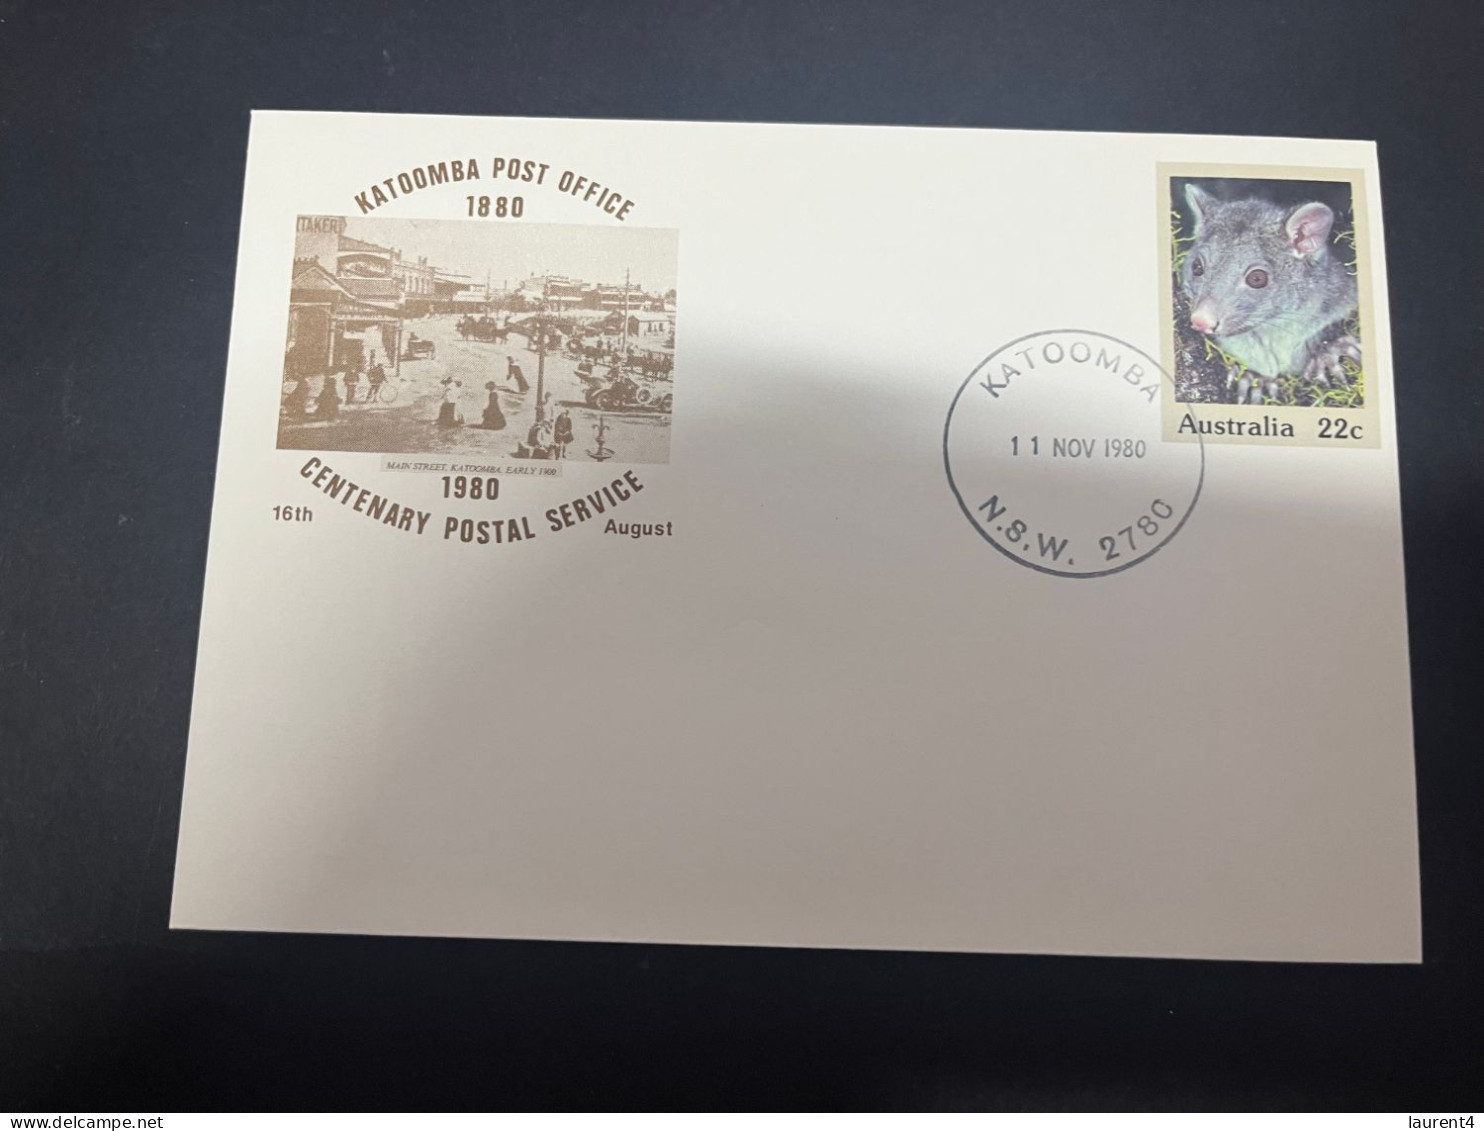 1-5-2024 (3 Z 39) Australia FDC (3 Covers) 1980 - Katoomba Post Office Centenary (NSW 2780) - Primo Giorno D'emissione (FDC)